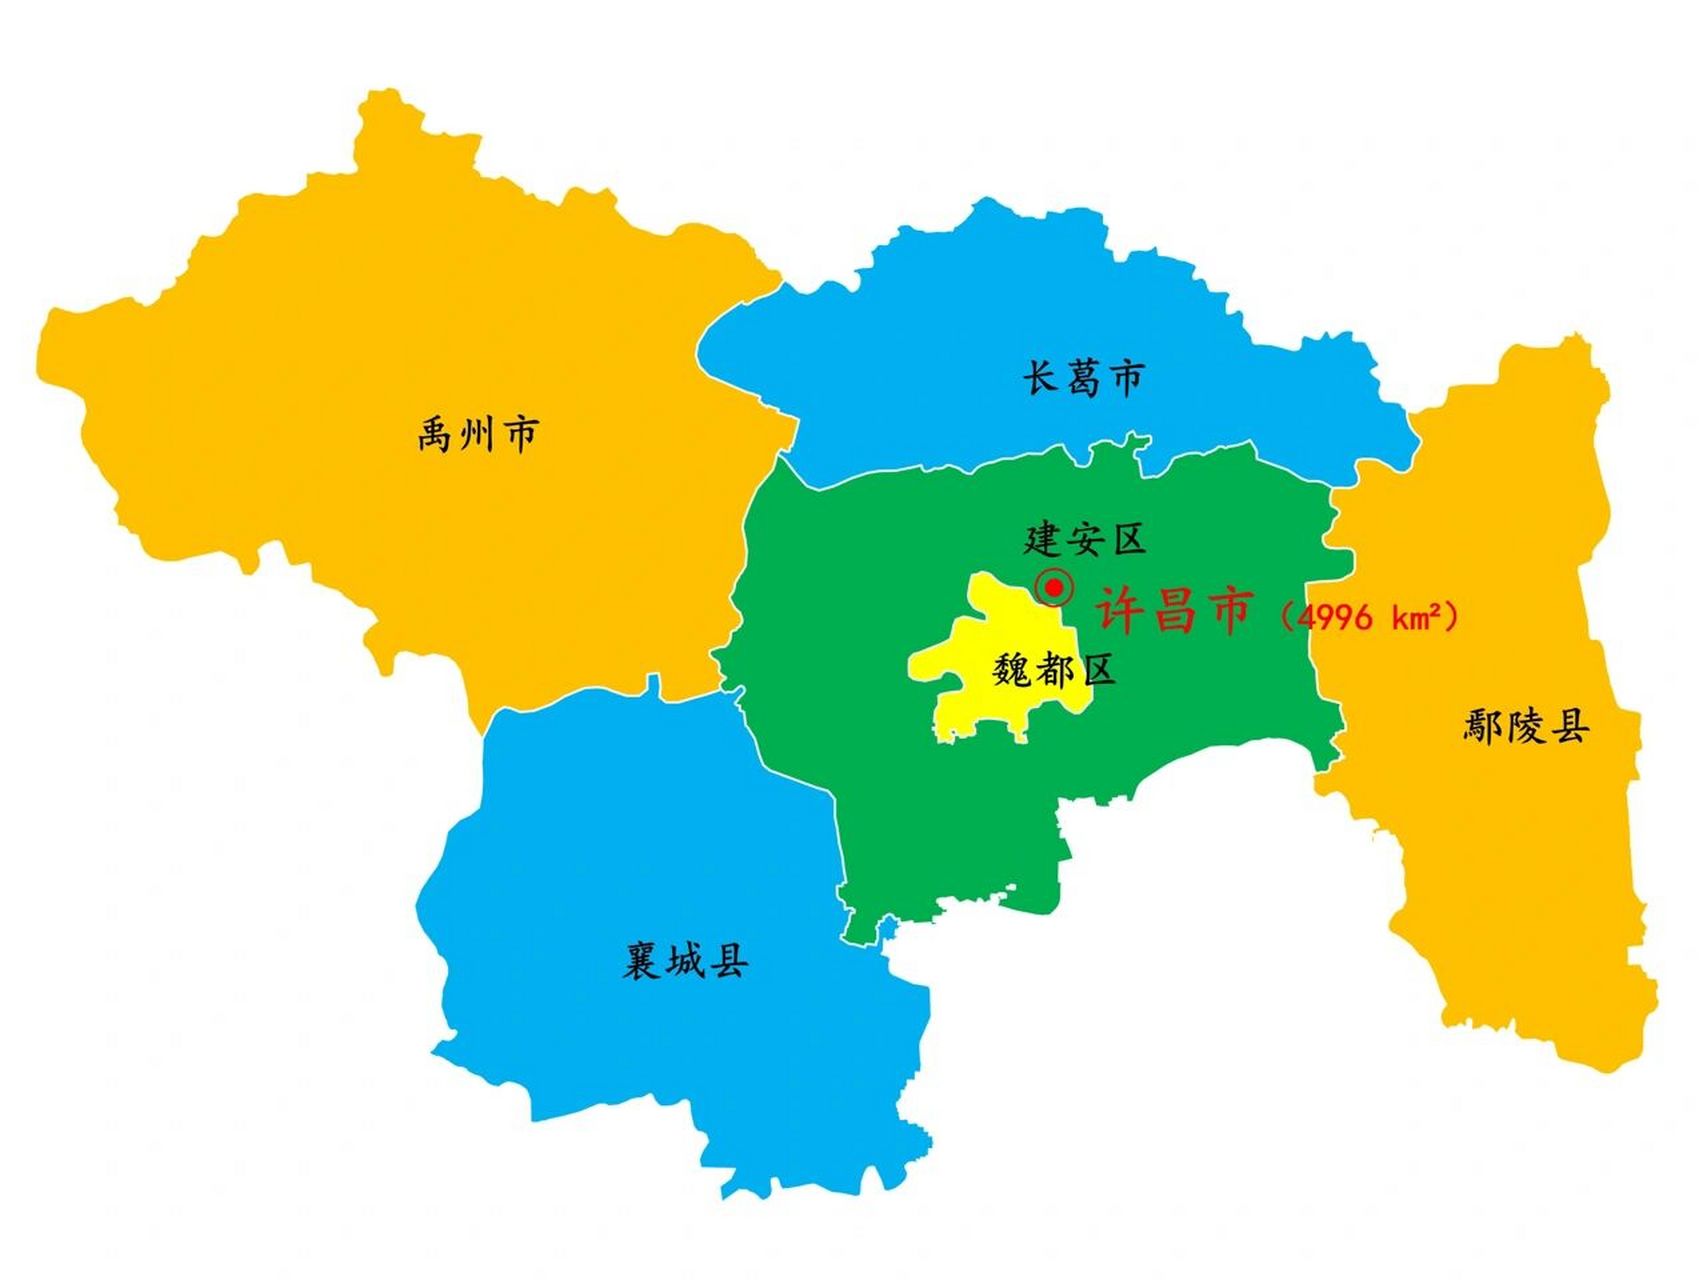 许昌市景区景点36个 下辖: 2个直辖区:魏都区,建安区 2个县级市:禹州